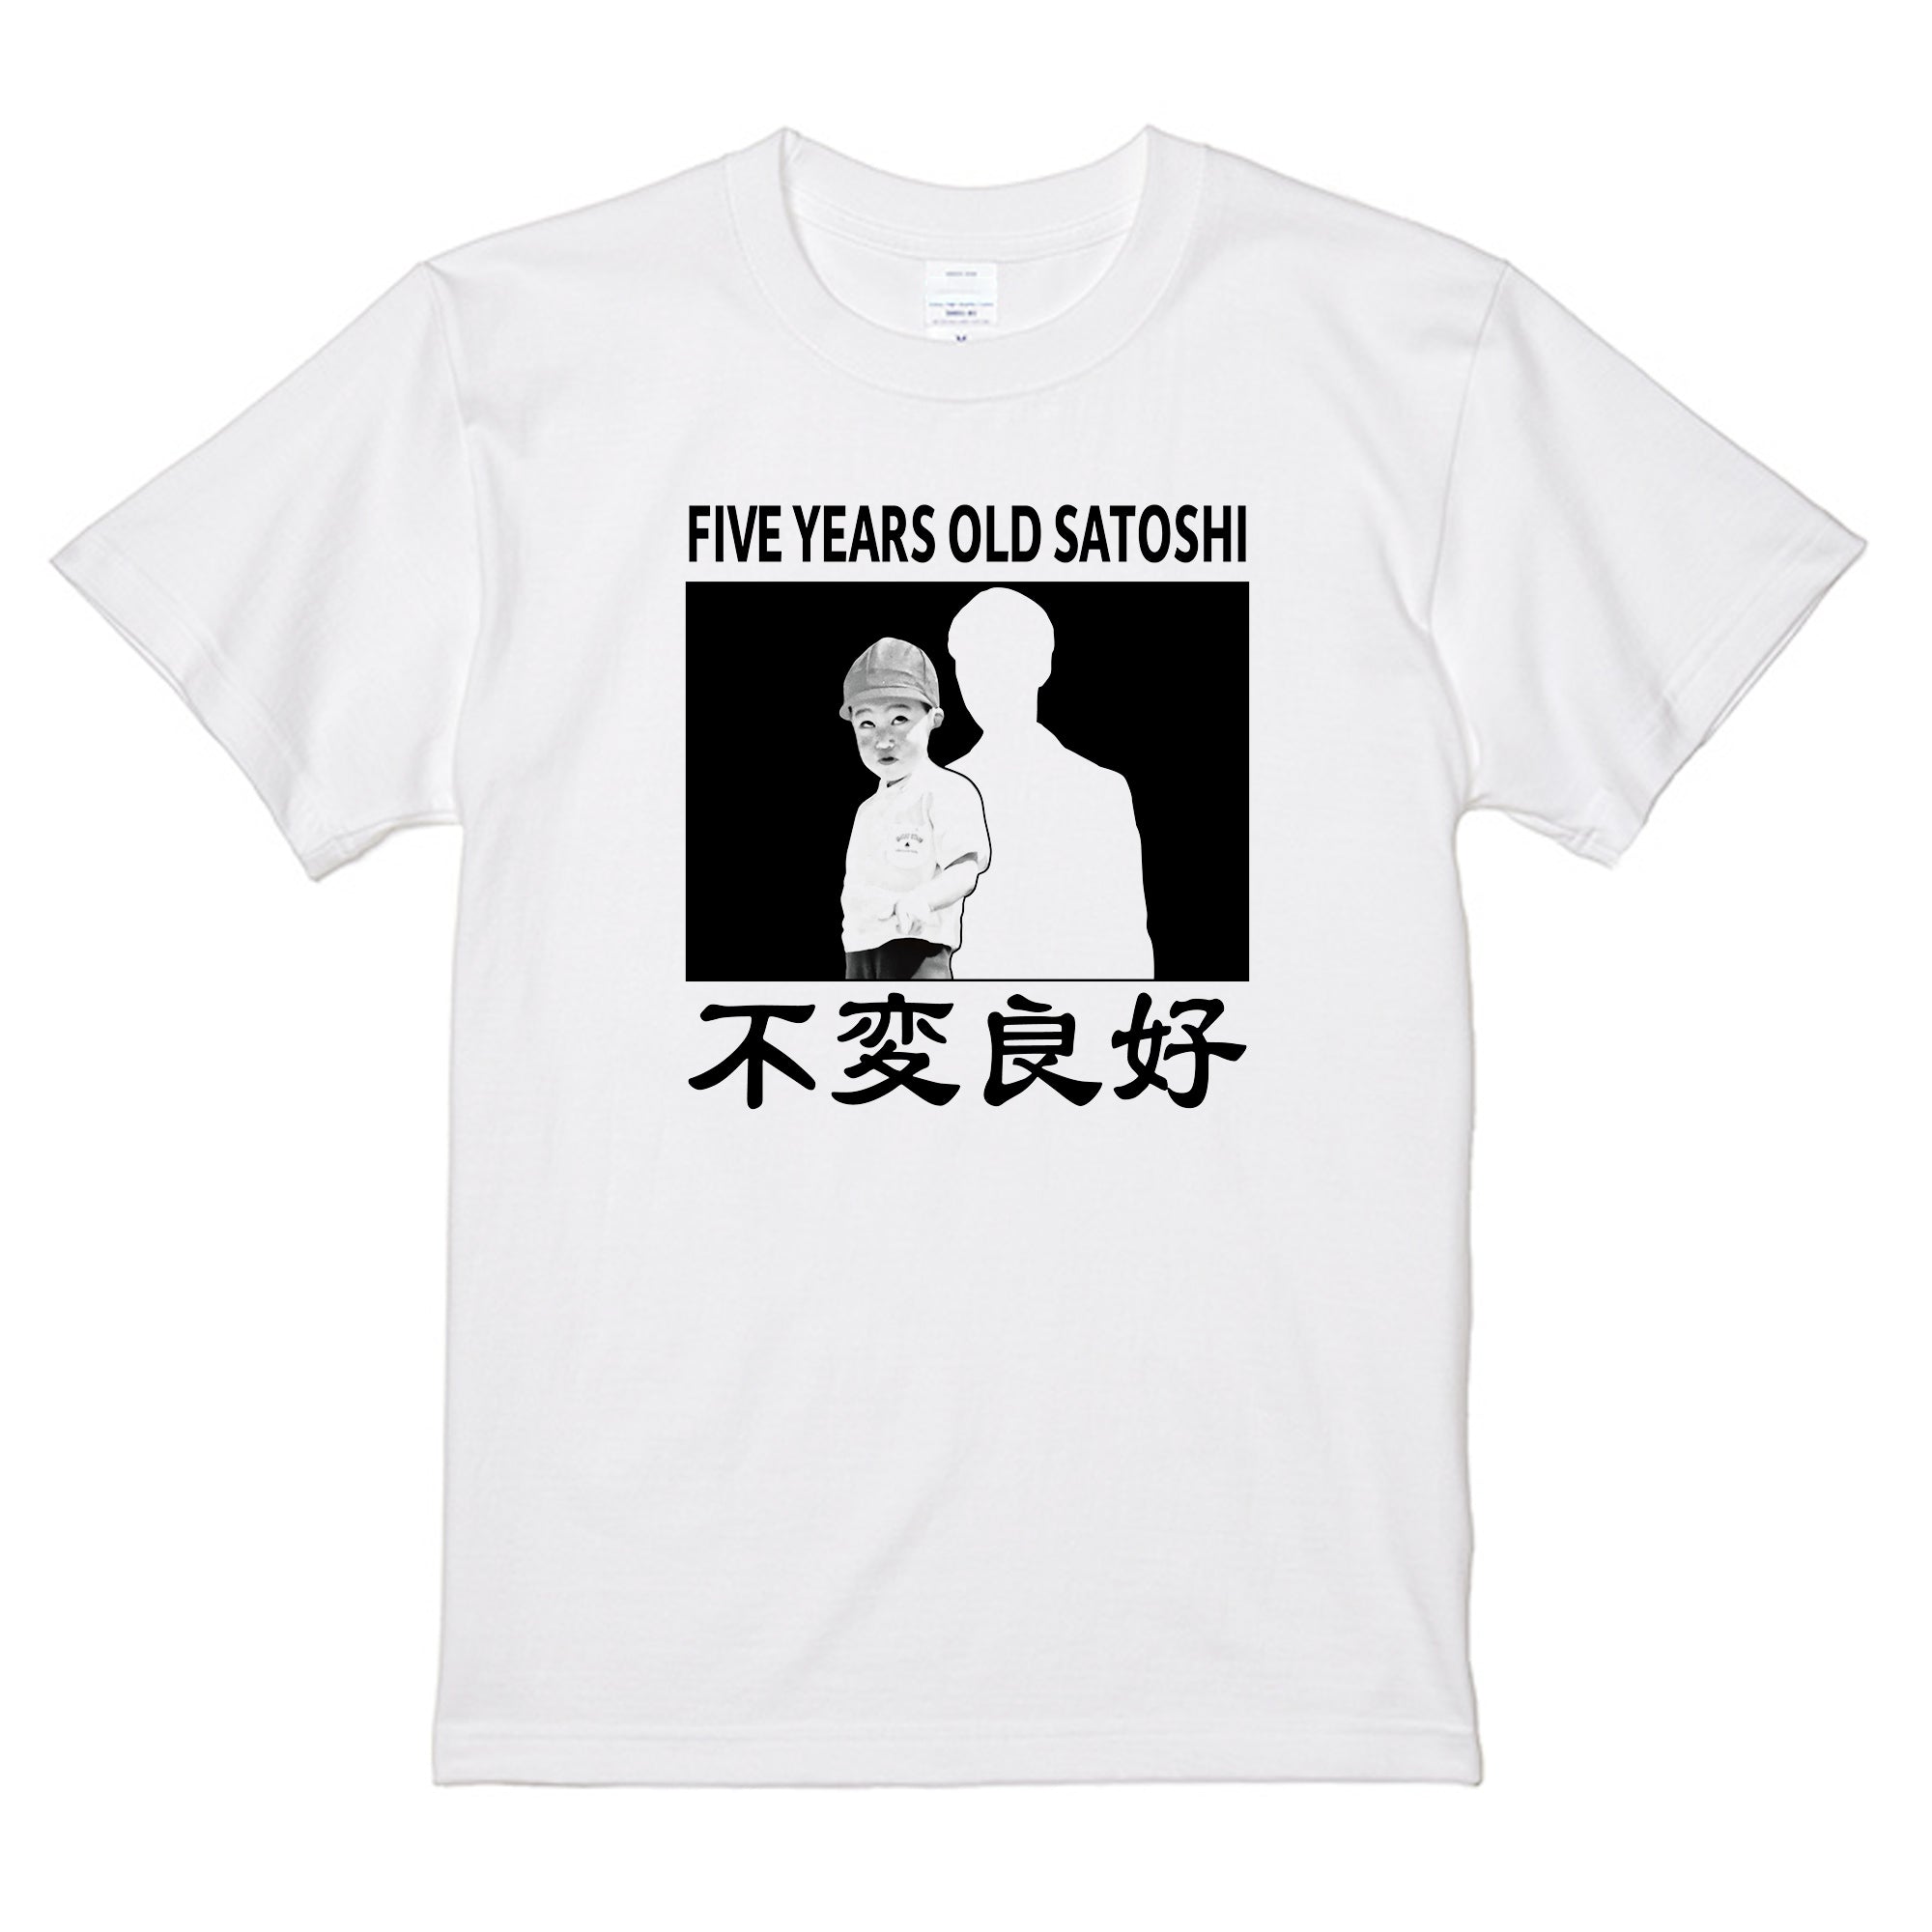 廃盤品 チャーリー浜 Tシャツ XLサイズ 吉本新喜劇 - フィギュア